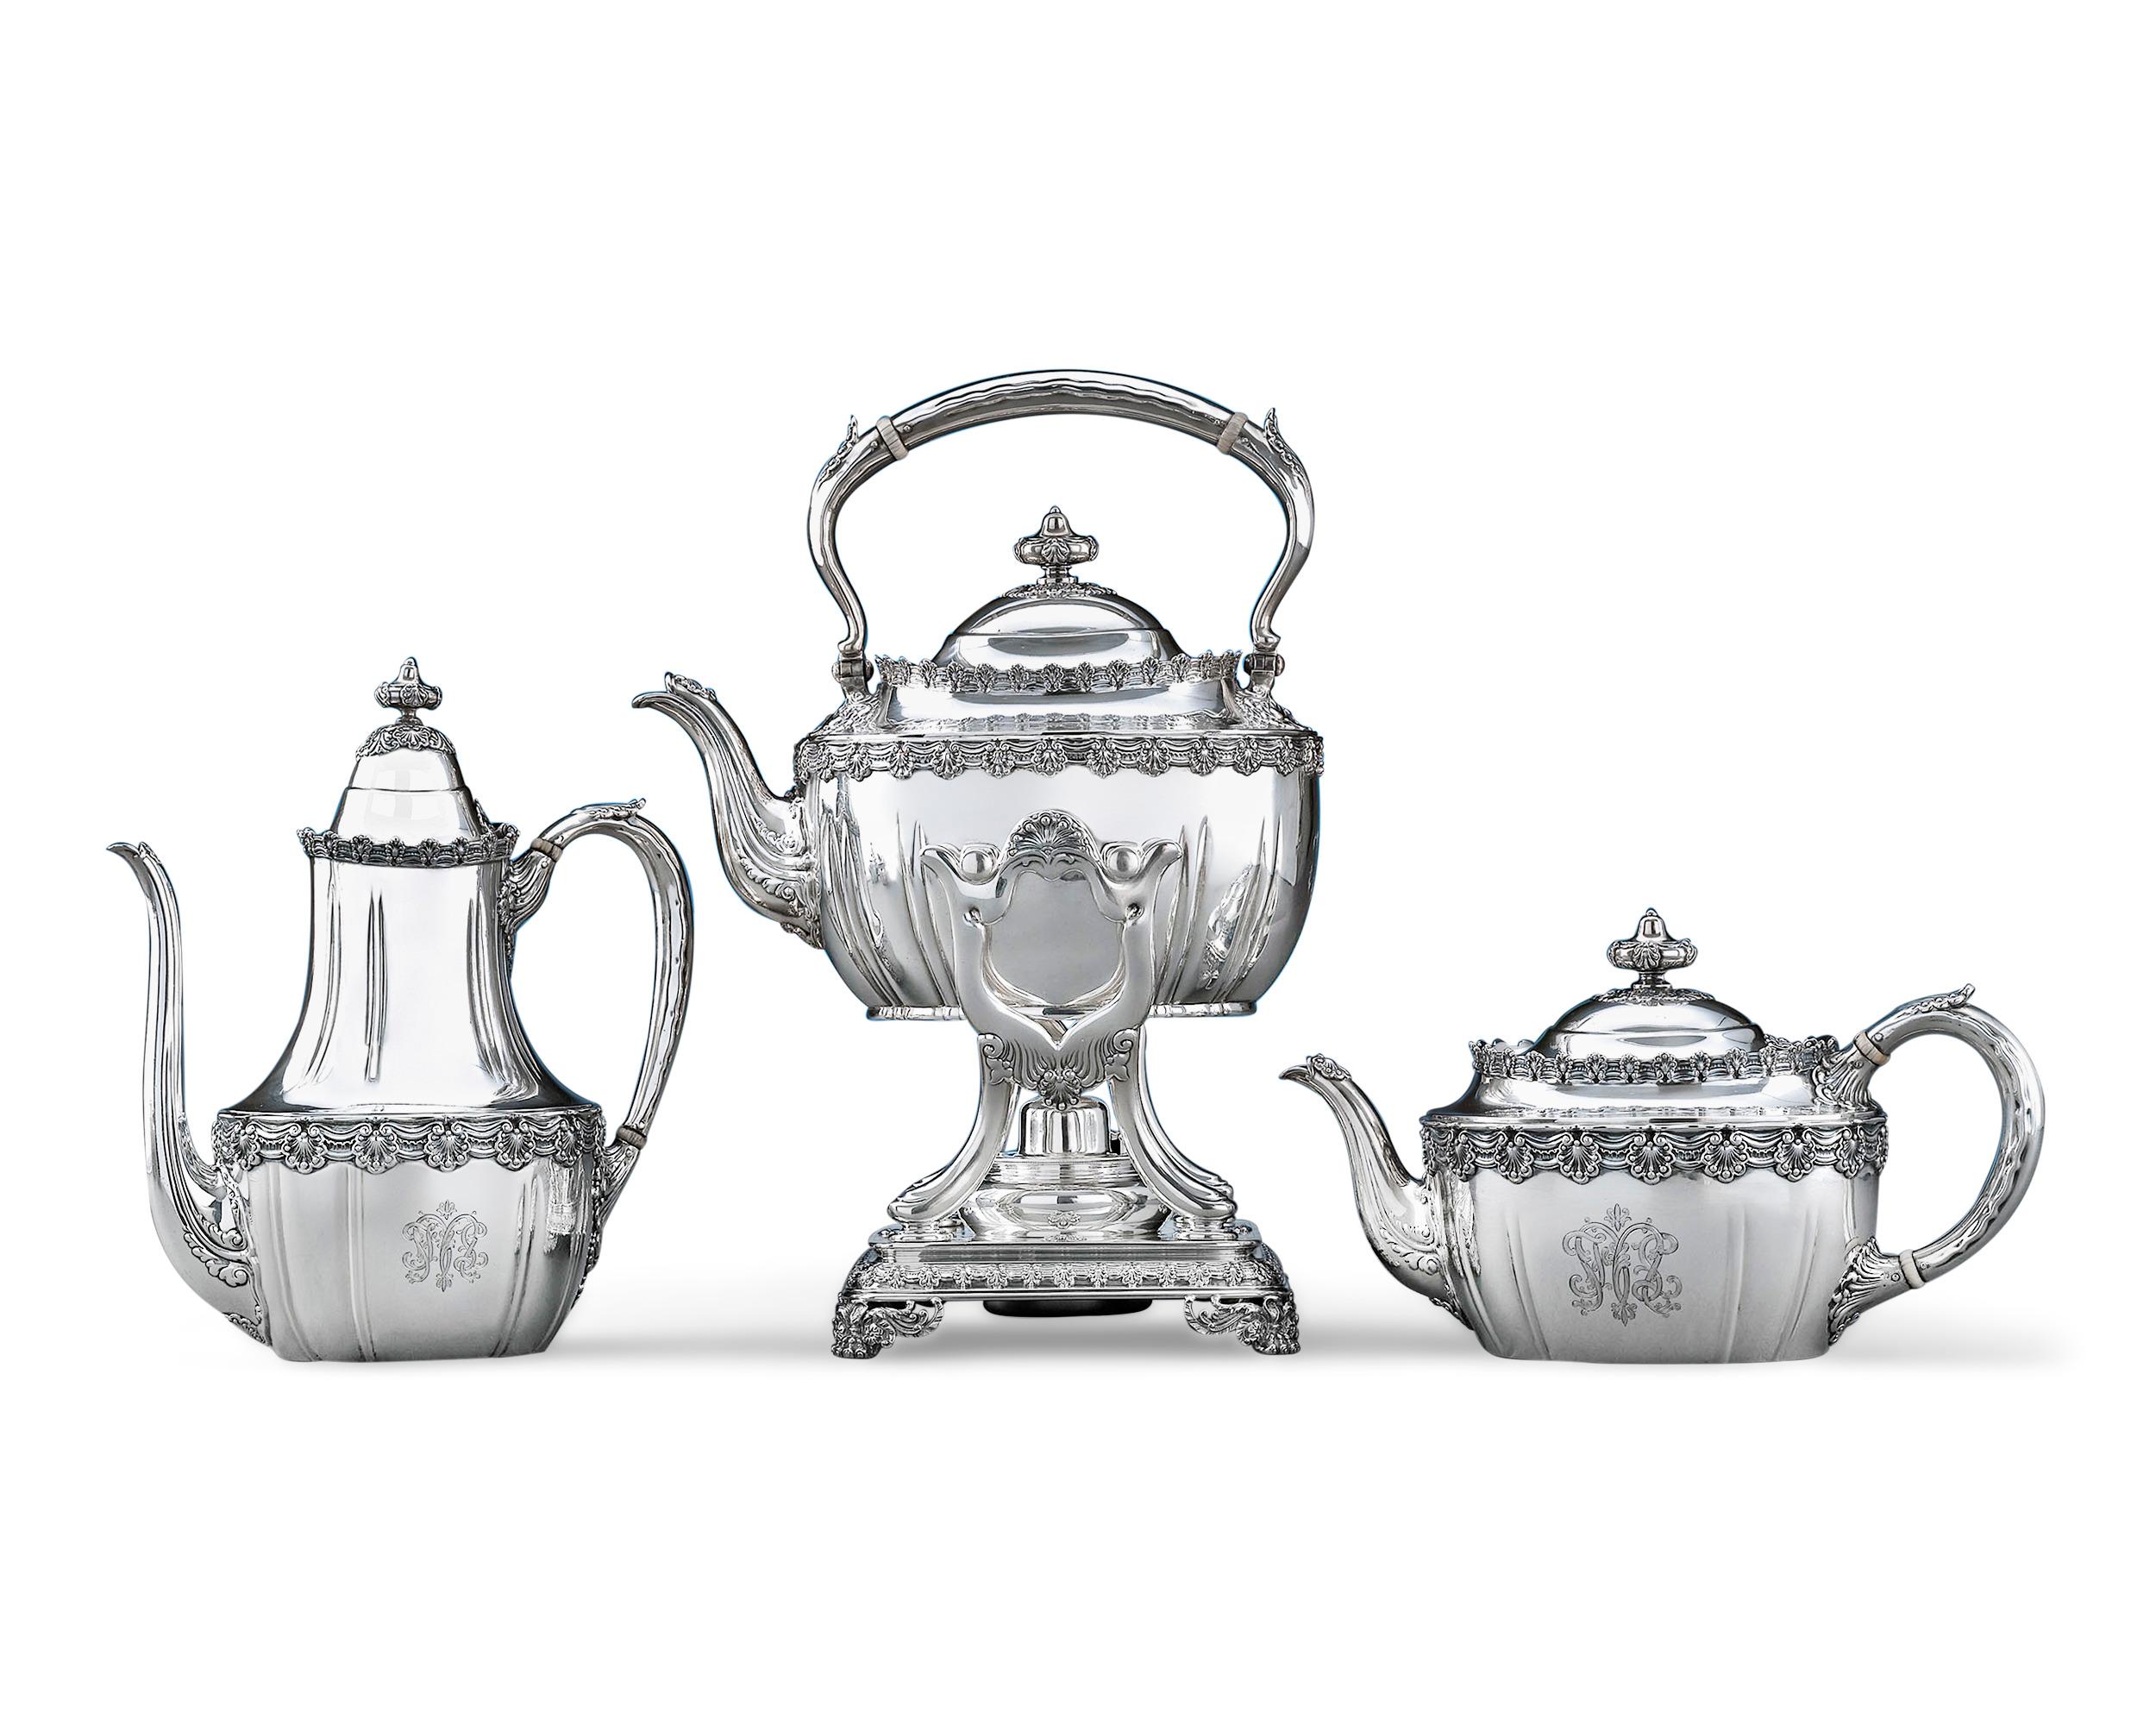 Dieses bedeutende Tee- und Kaffeeservice aus Sterlingsilber von Tiffany & Co. ist nach dem klassischen englischen King-Muster gefertigt. Das 1885 von Tiffany eingeführte Muster English King spiegelt den aufwendigen Unterhaltungsstil des Gilded Age